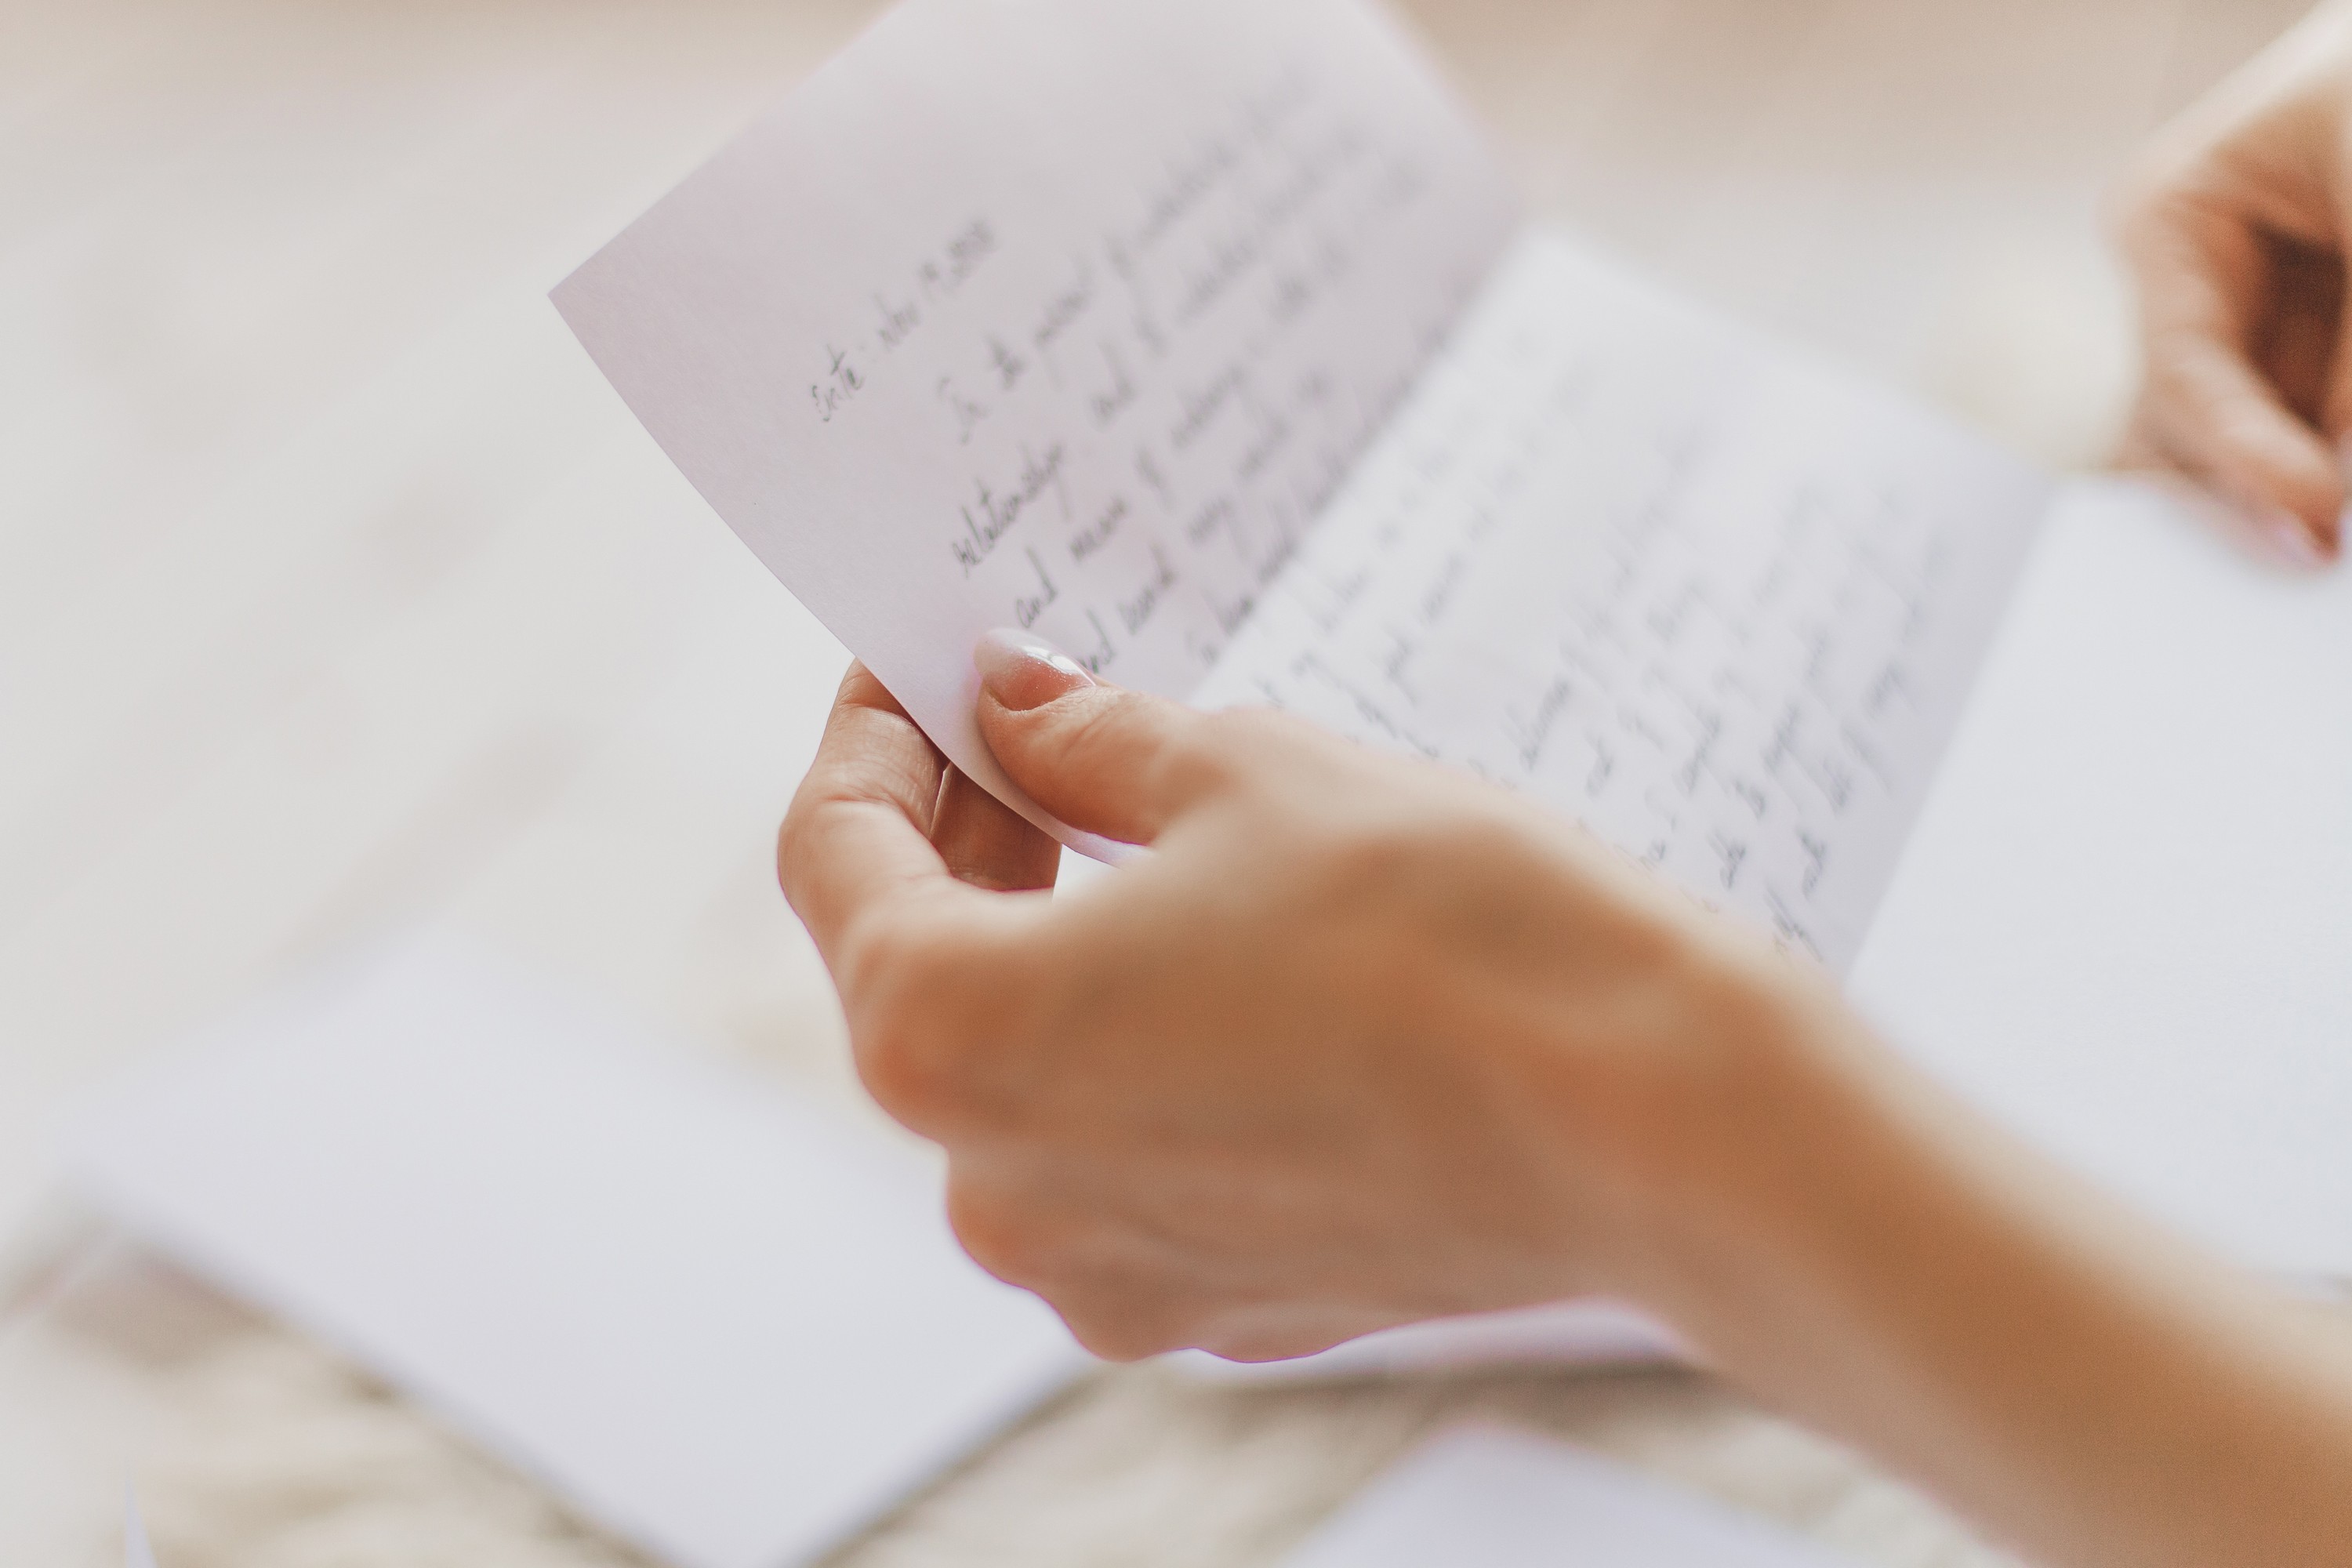 Una persona con una carta en la mano | Fuente: Shutterstock